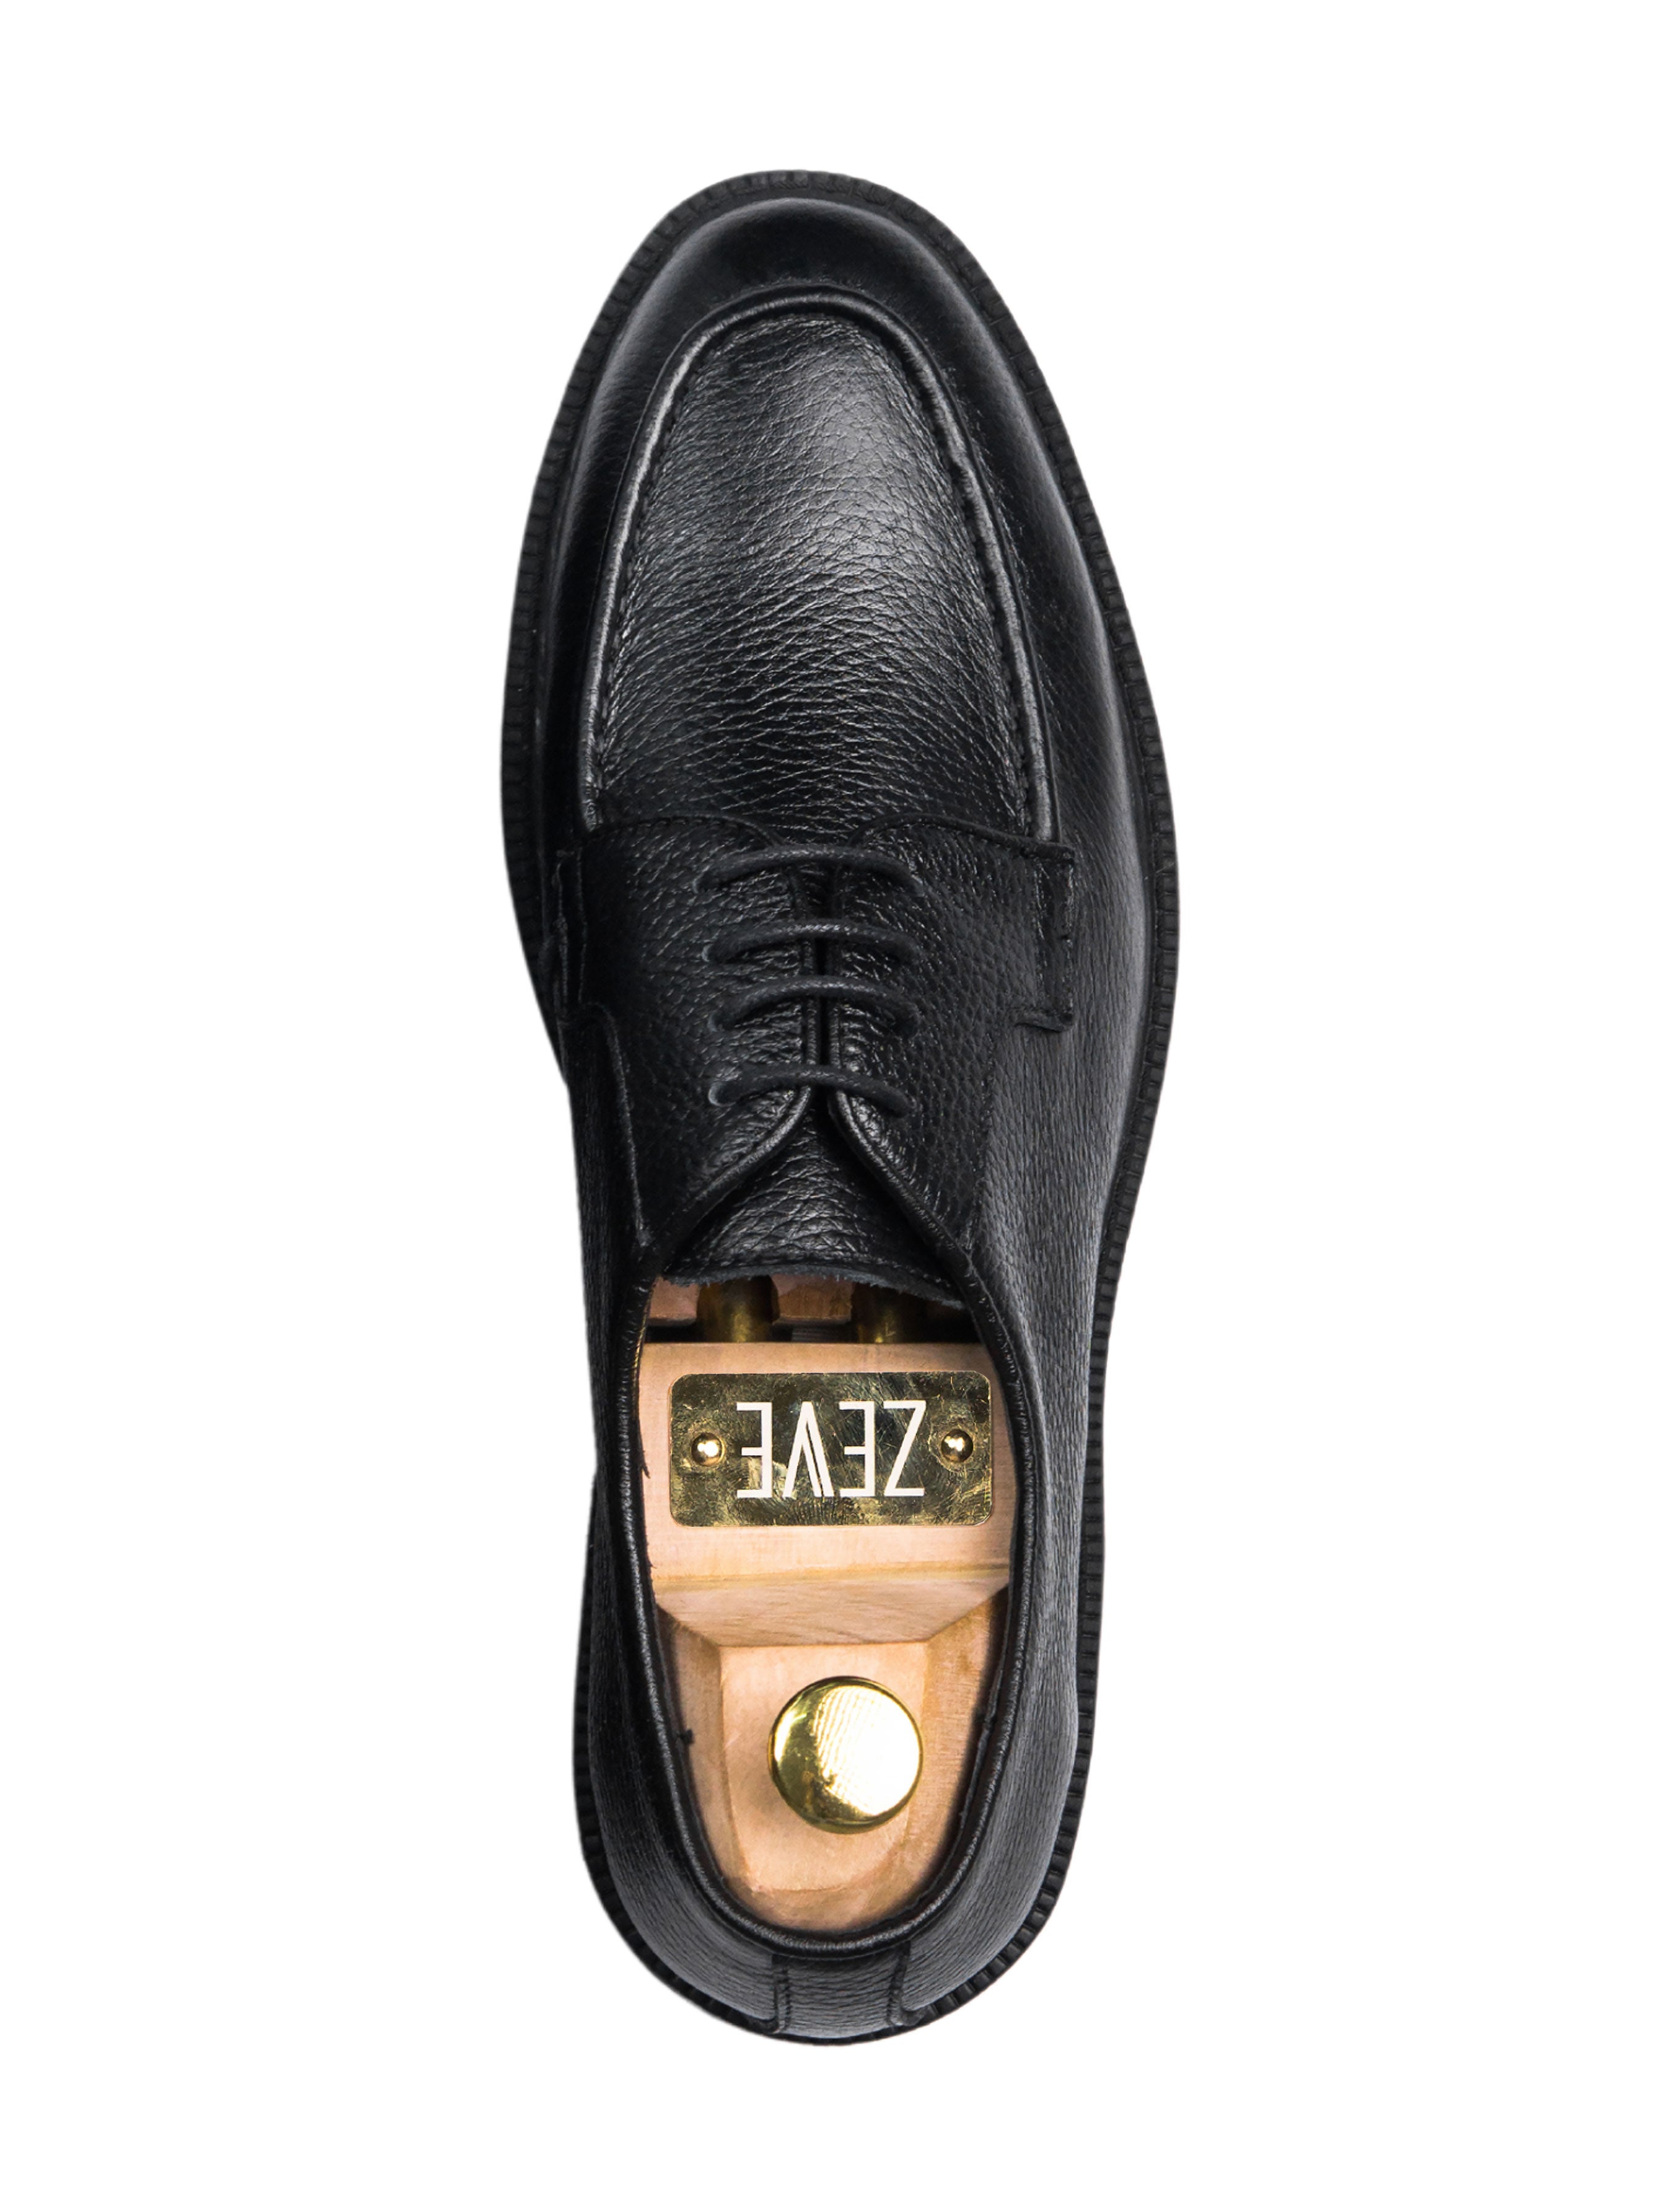 Blucher Lace Up - Black Pebble Grain Leather (Combat Sole) - Zeve Shoes